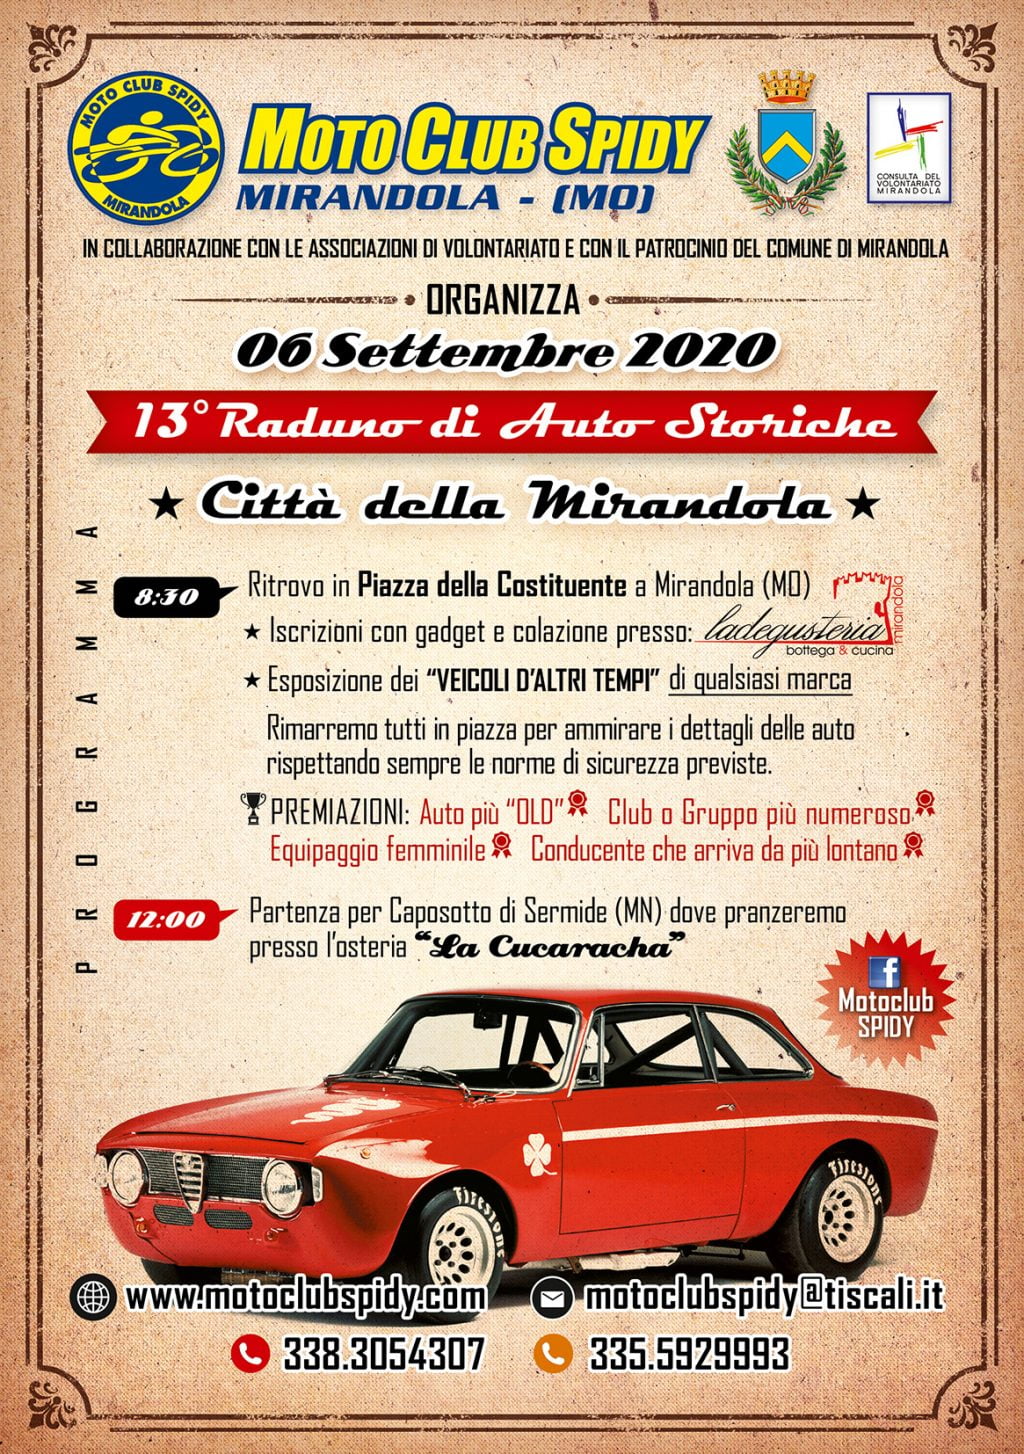 06/09: 13° Raduno di Auto Storiche - Mirandola (MO)